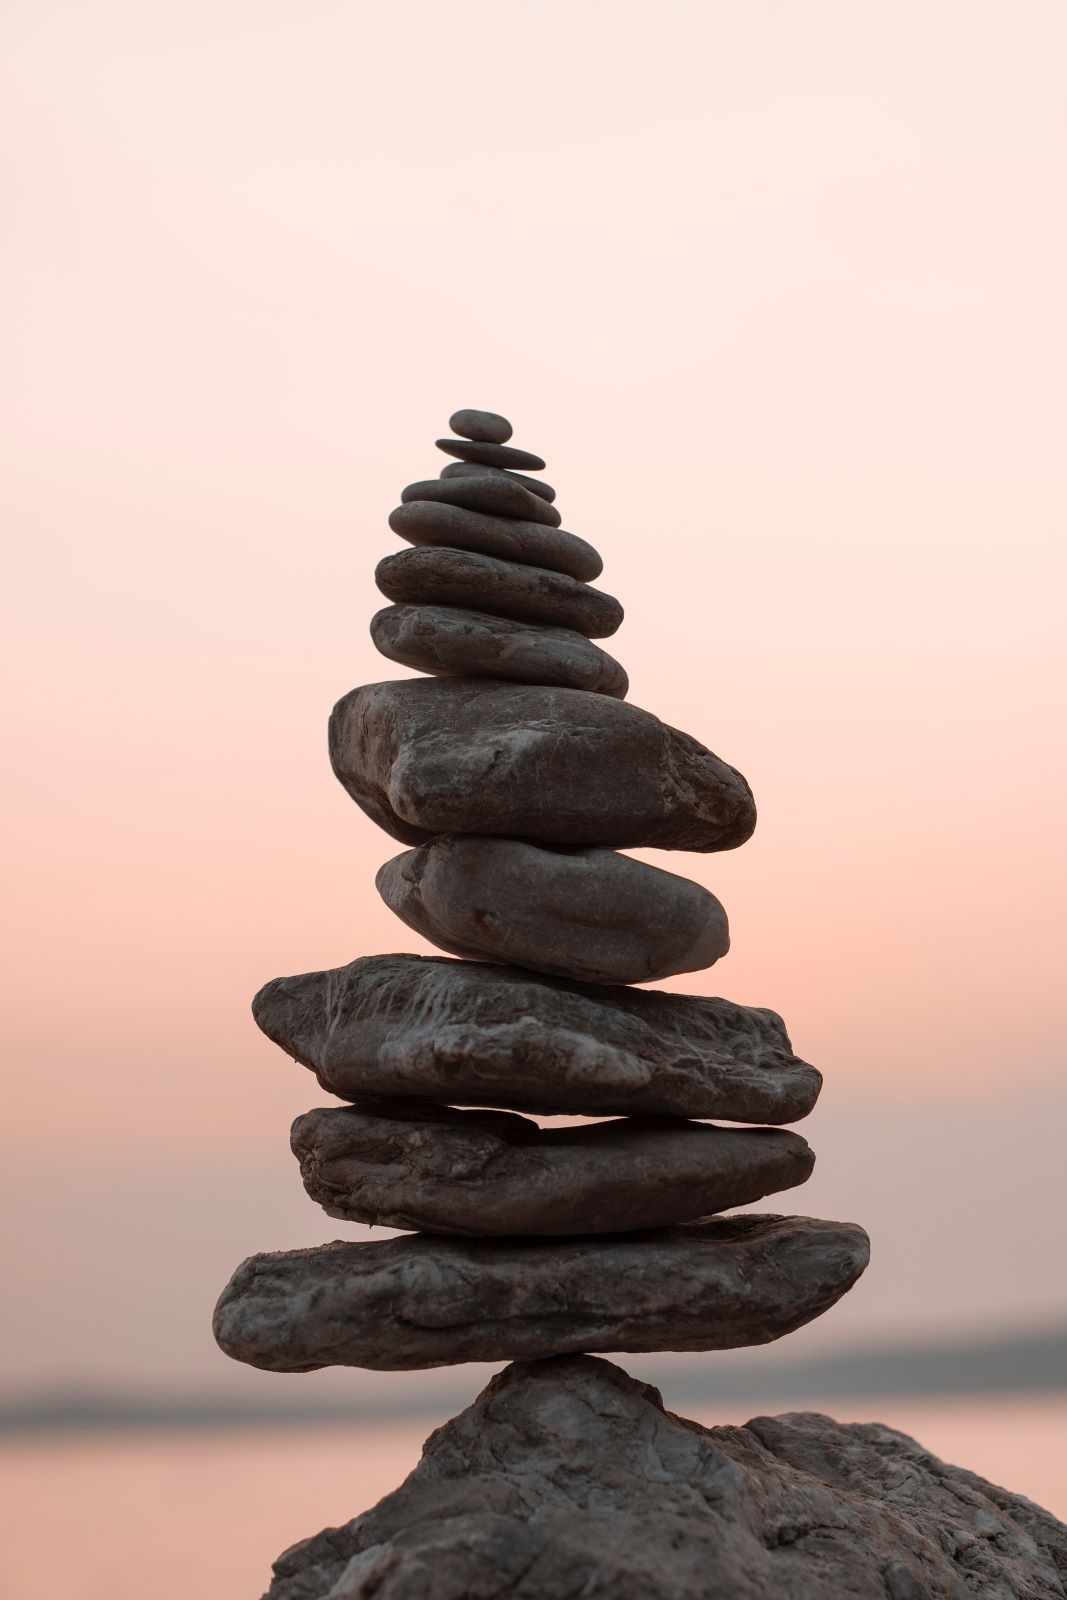 Πέτρες η μια πάνω στην άλλη σε ισορροπία